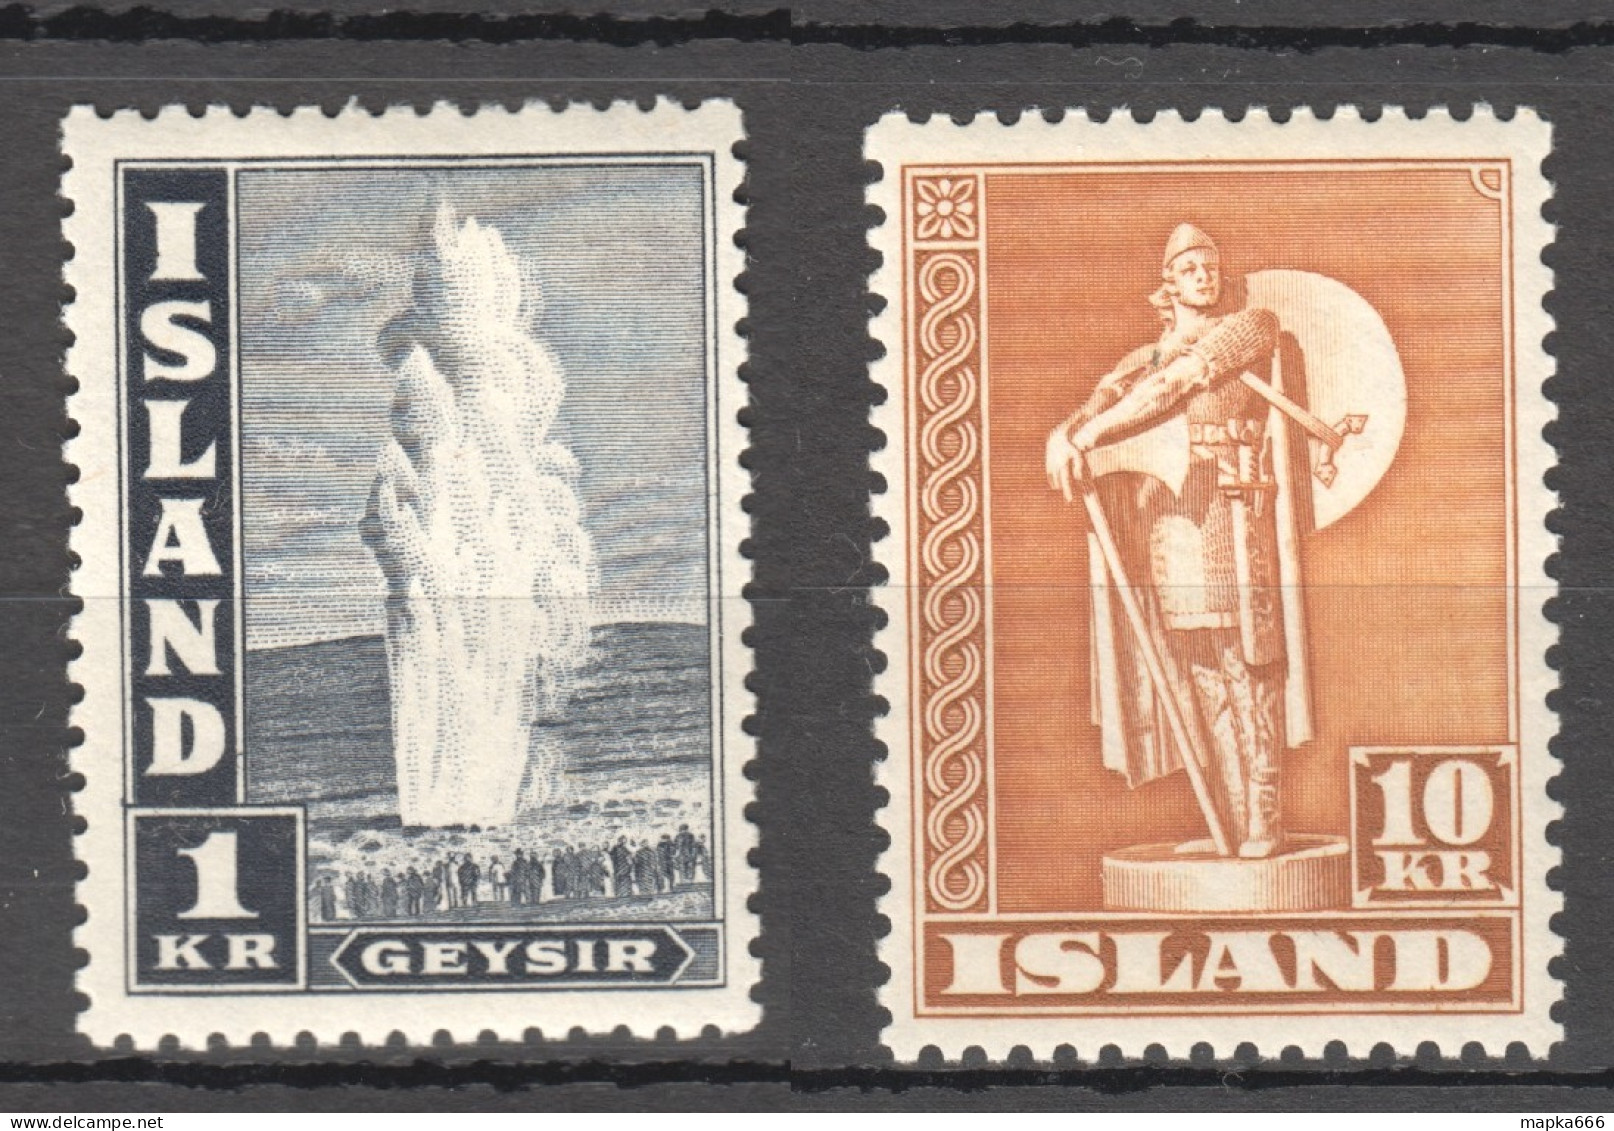 Sp667-668 1945 Iceland Geyser Statue Michel #239-40C 26 Euro 2St Mnh,Lh - Nuevos